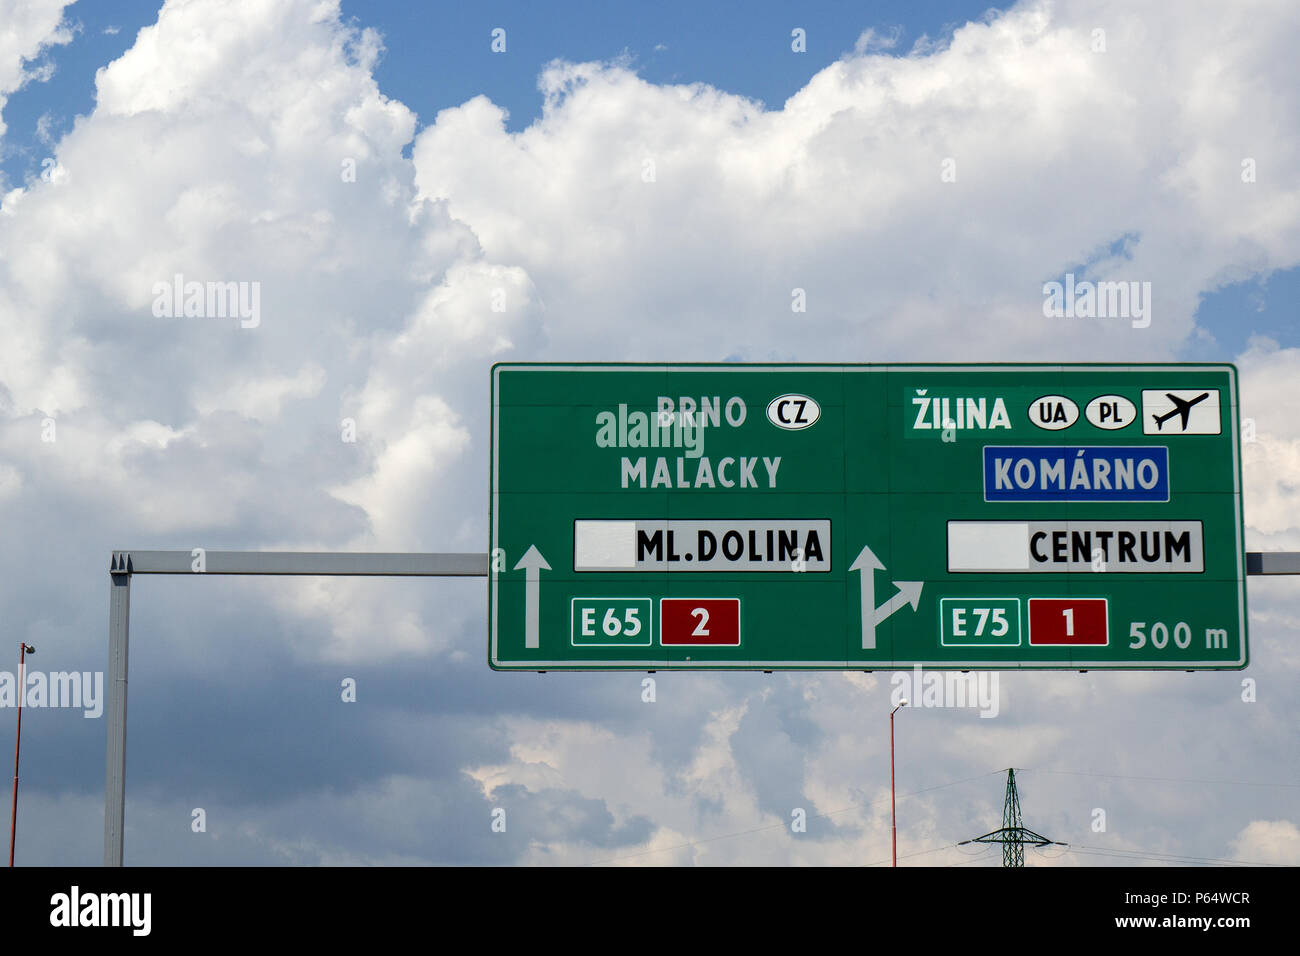 Grünes Straßenschild auf der Autobahn in die Richtungen BRNO Malacky Dolina Tschechische Republik und Zilima, Komarno Centrum Ukraine und Polen. Foto Stock